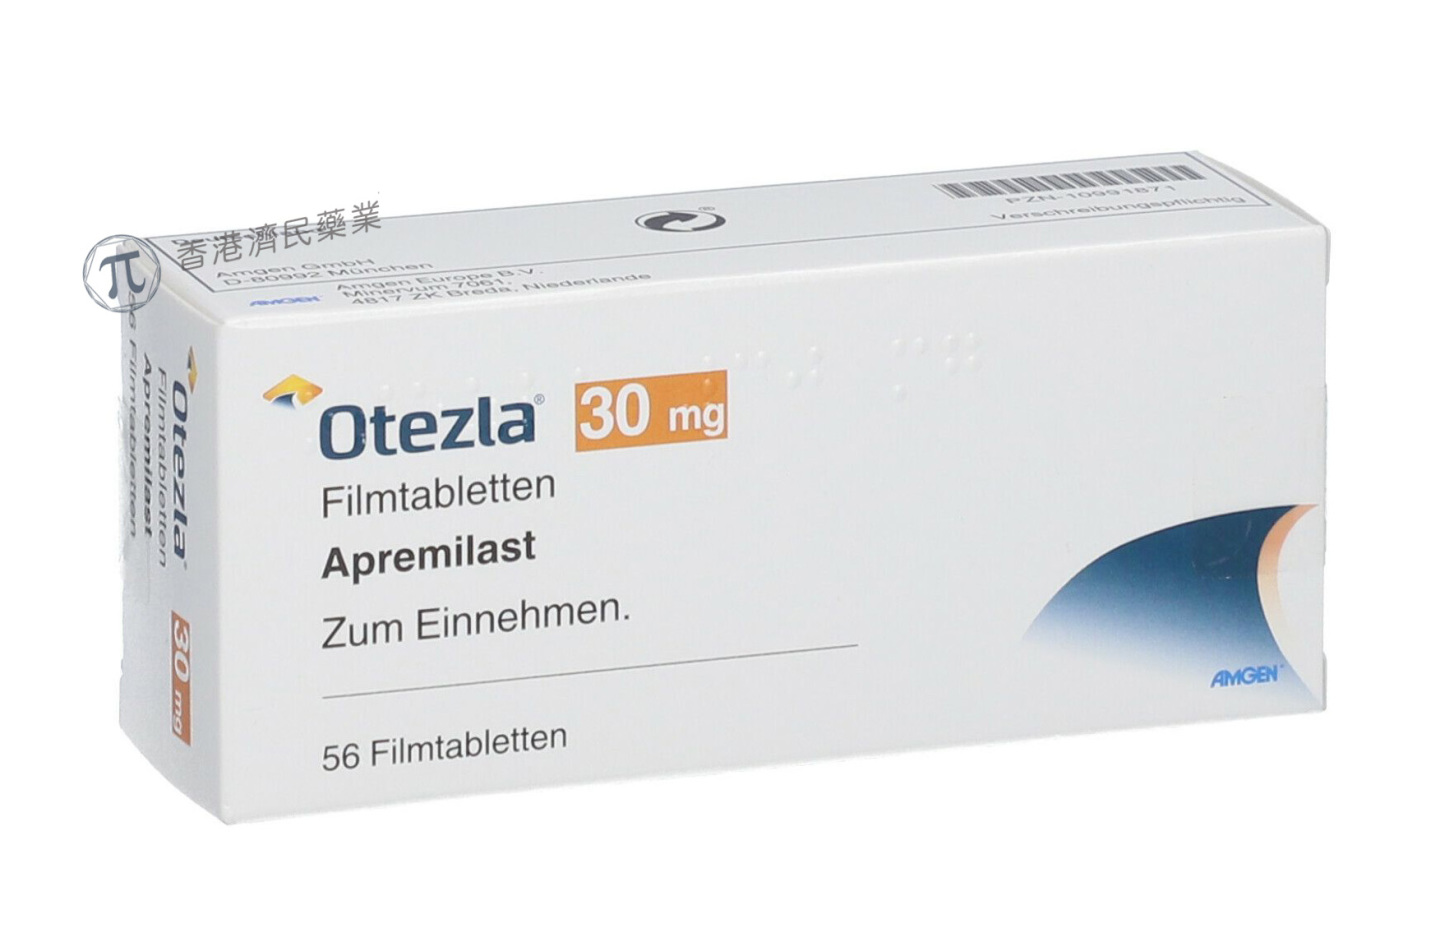 口服PDE4抑制剂Otezla(阿普司特)治疗儿科银屑病 3期临床研究成功